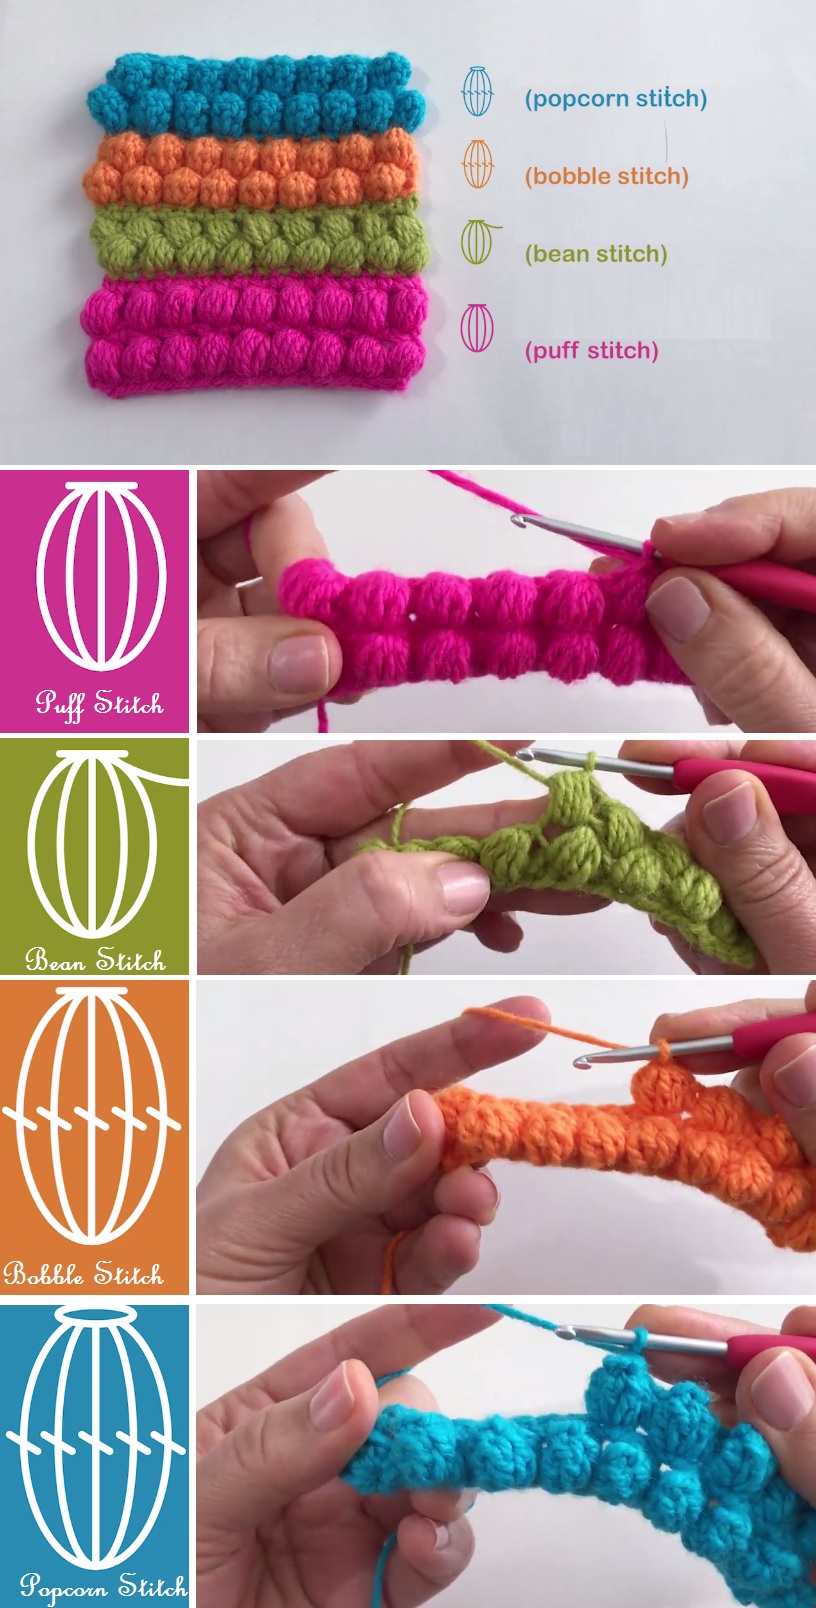 Crochet Stitches - Puff, Bean, Bobble, Popcorn Crochetmonamour vjazan1, pri...